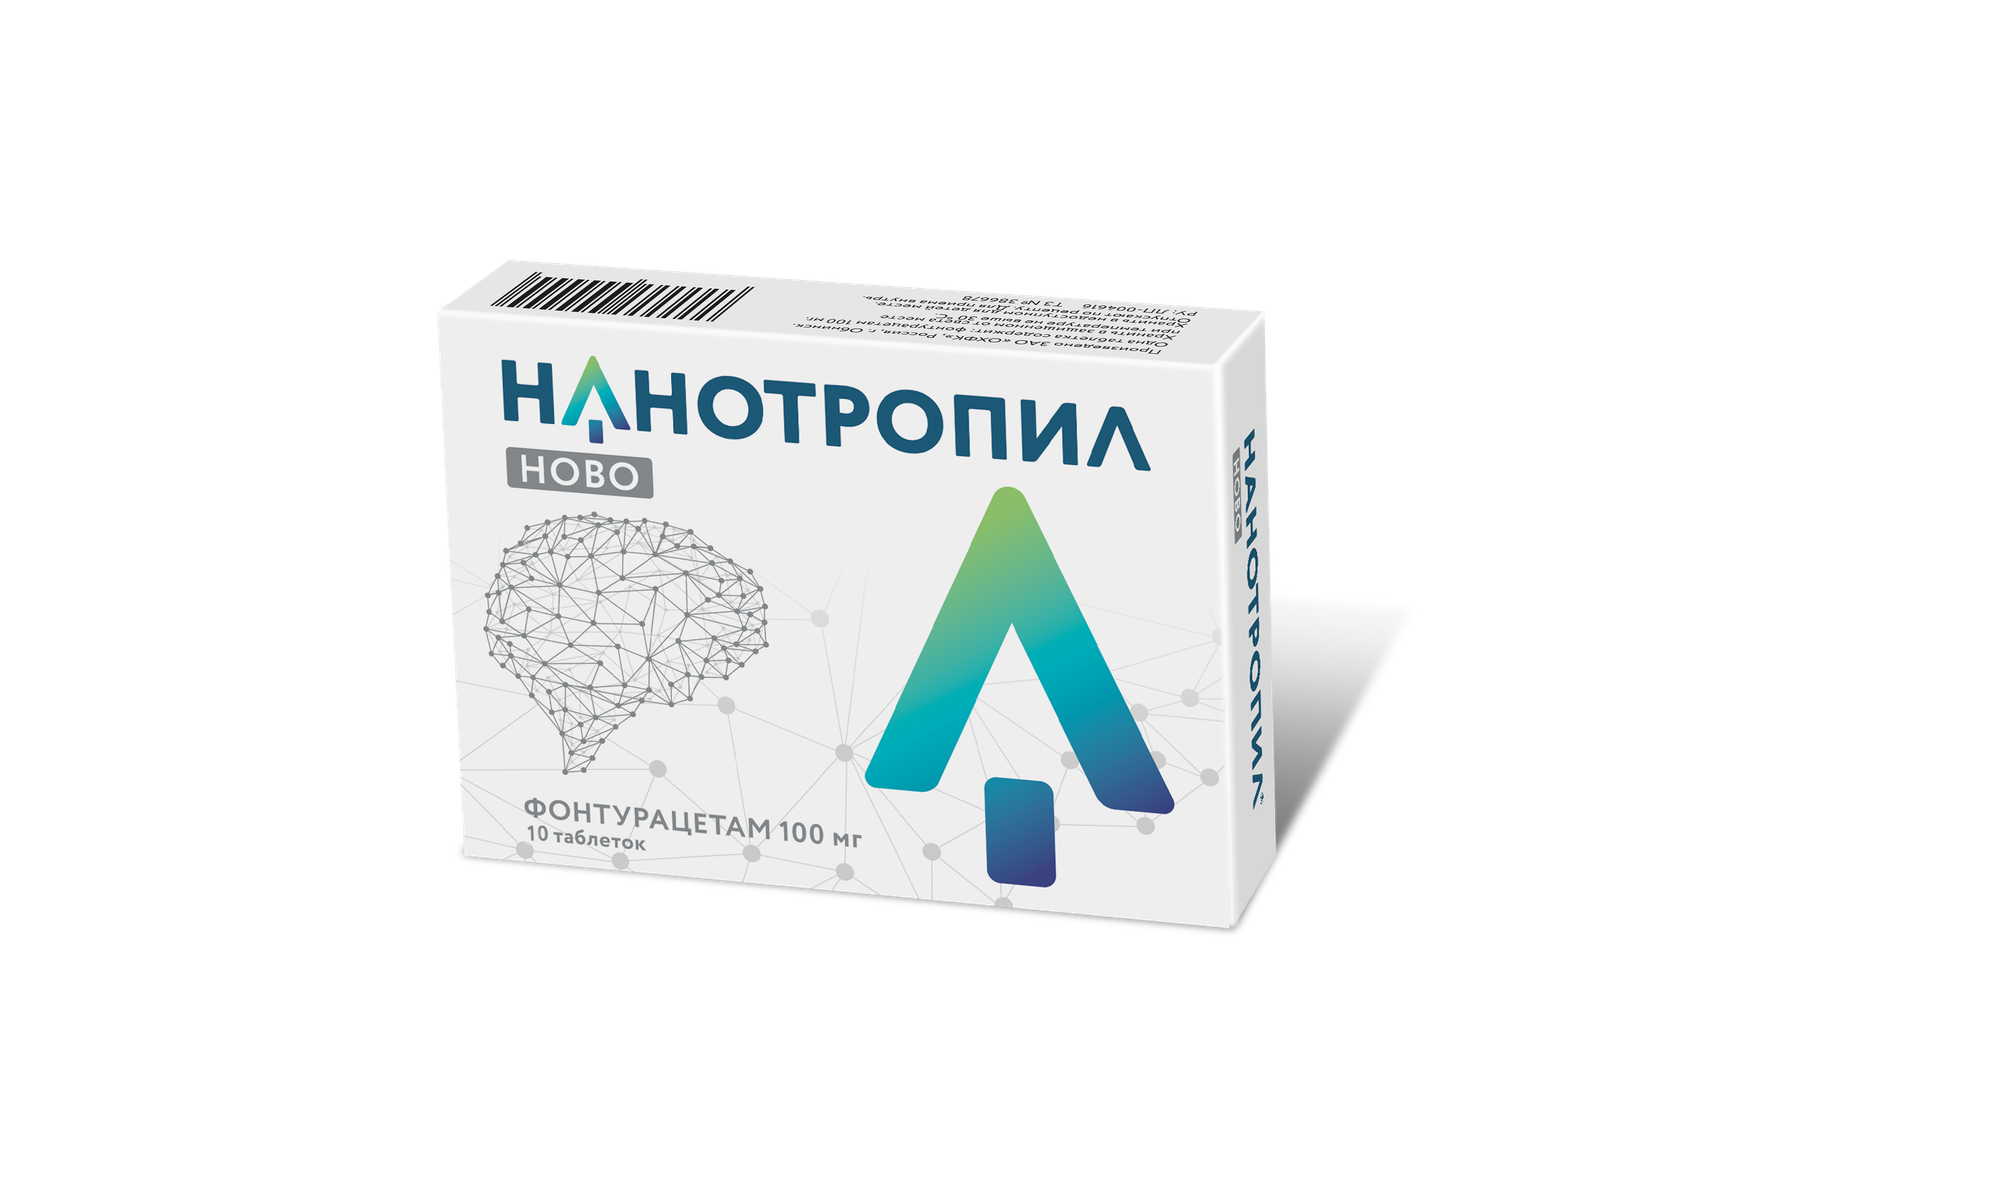 Нанотропил Ново (таблетки, 10 шт, 100 мг) - цена,  онлайн в .